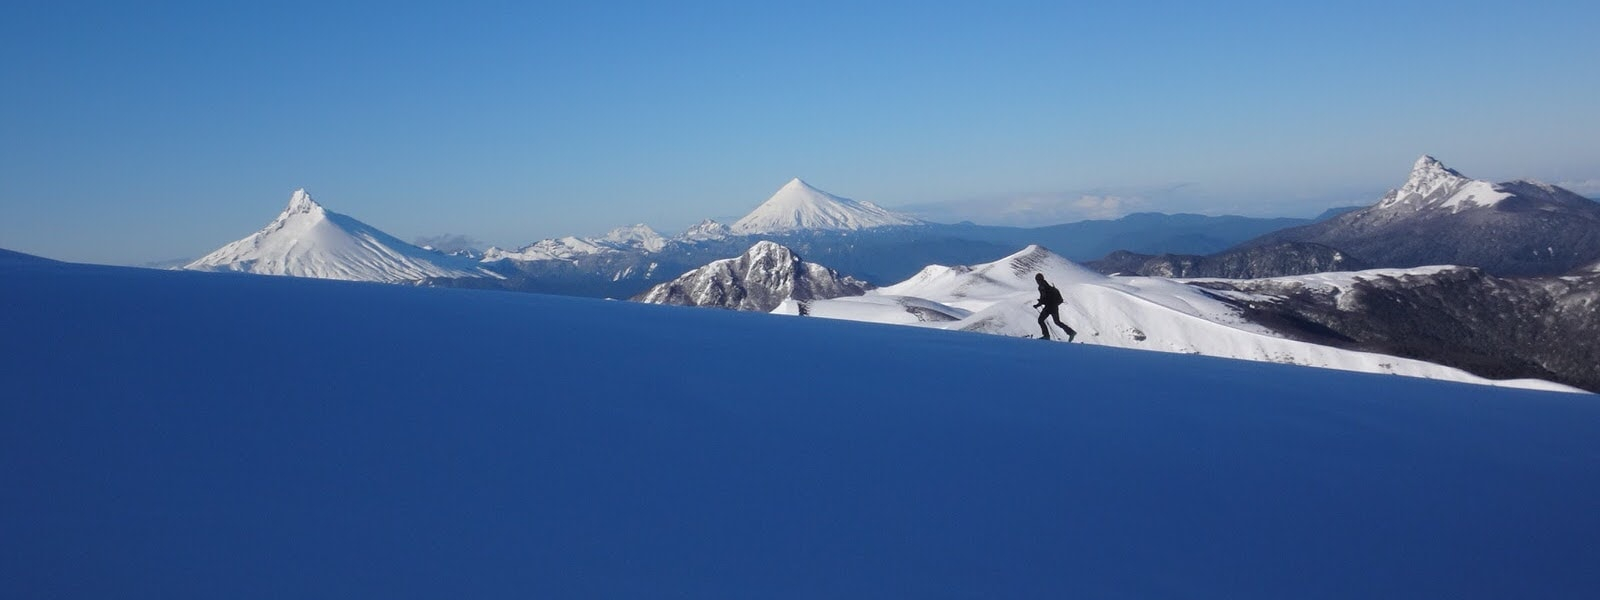 volcano ski touring in Chile South America